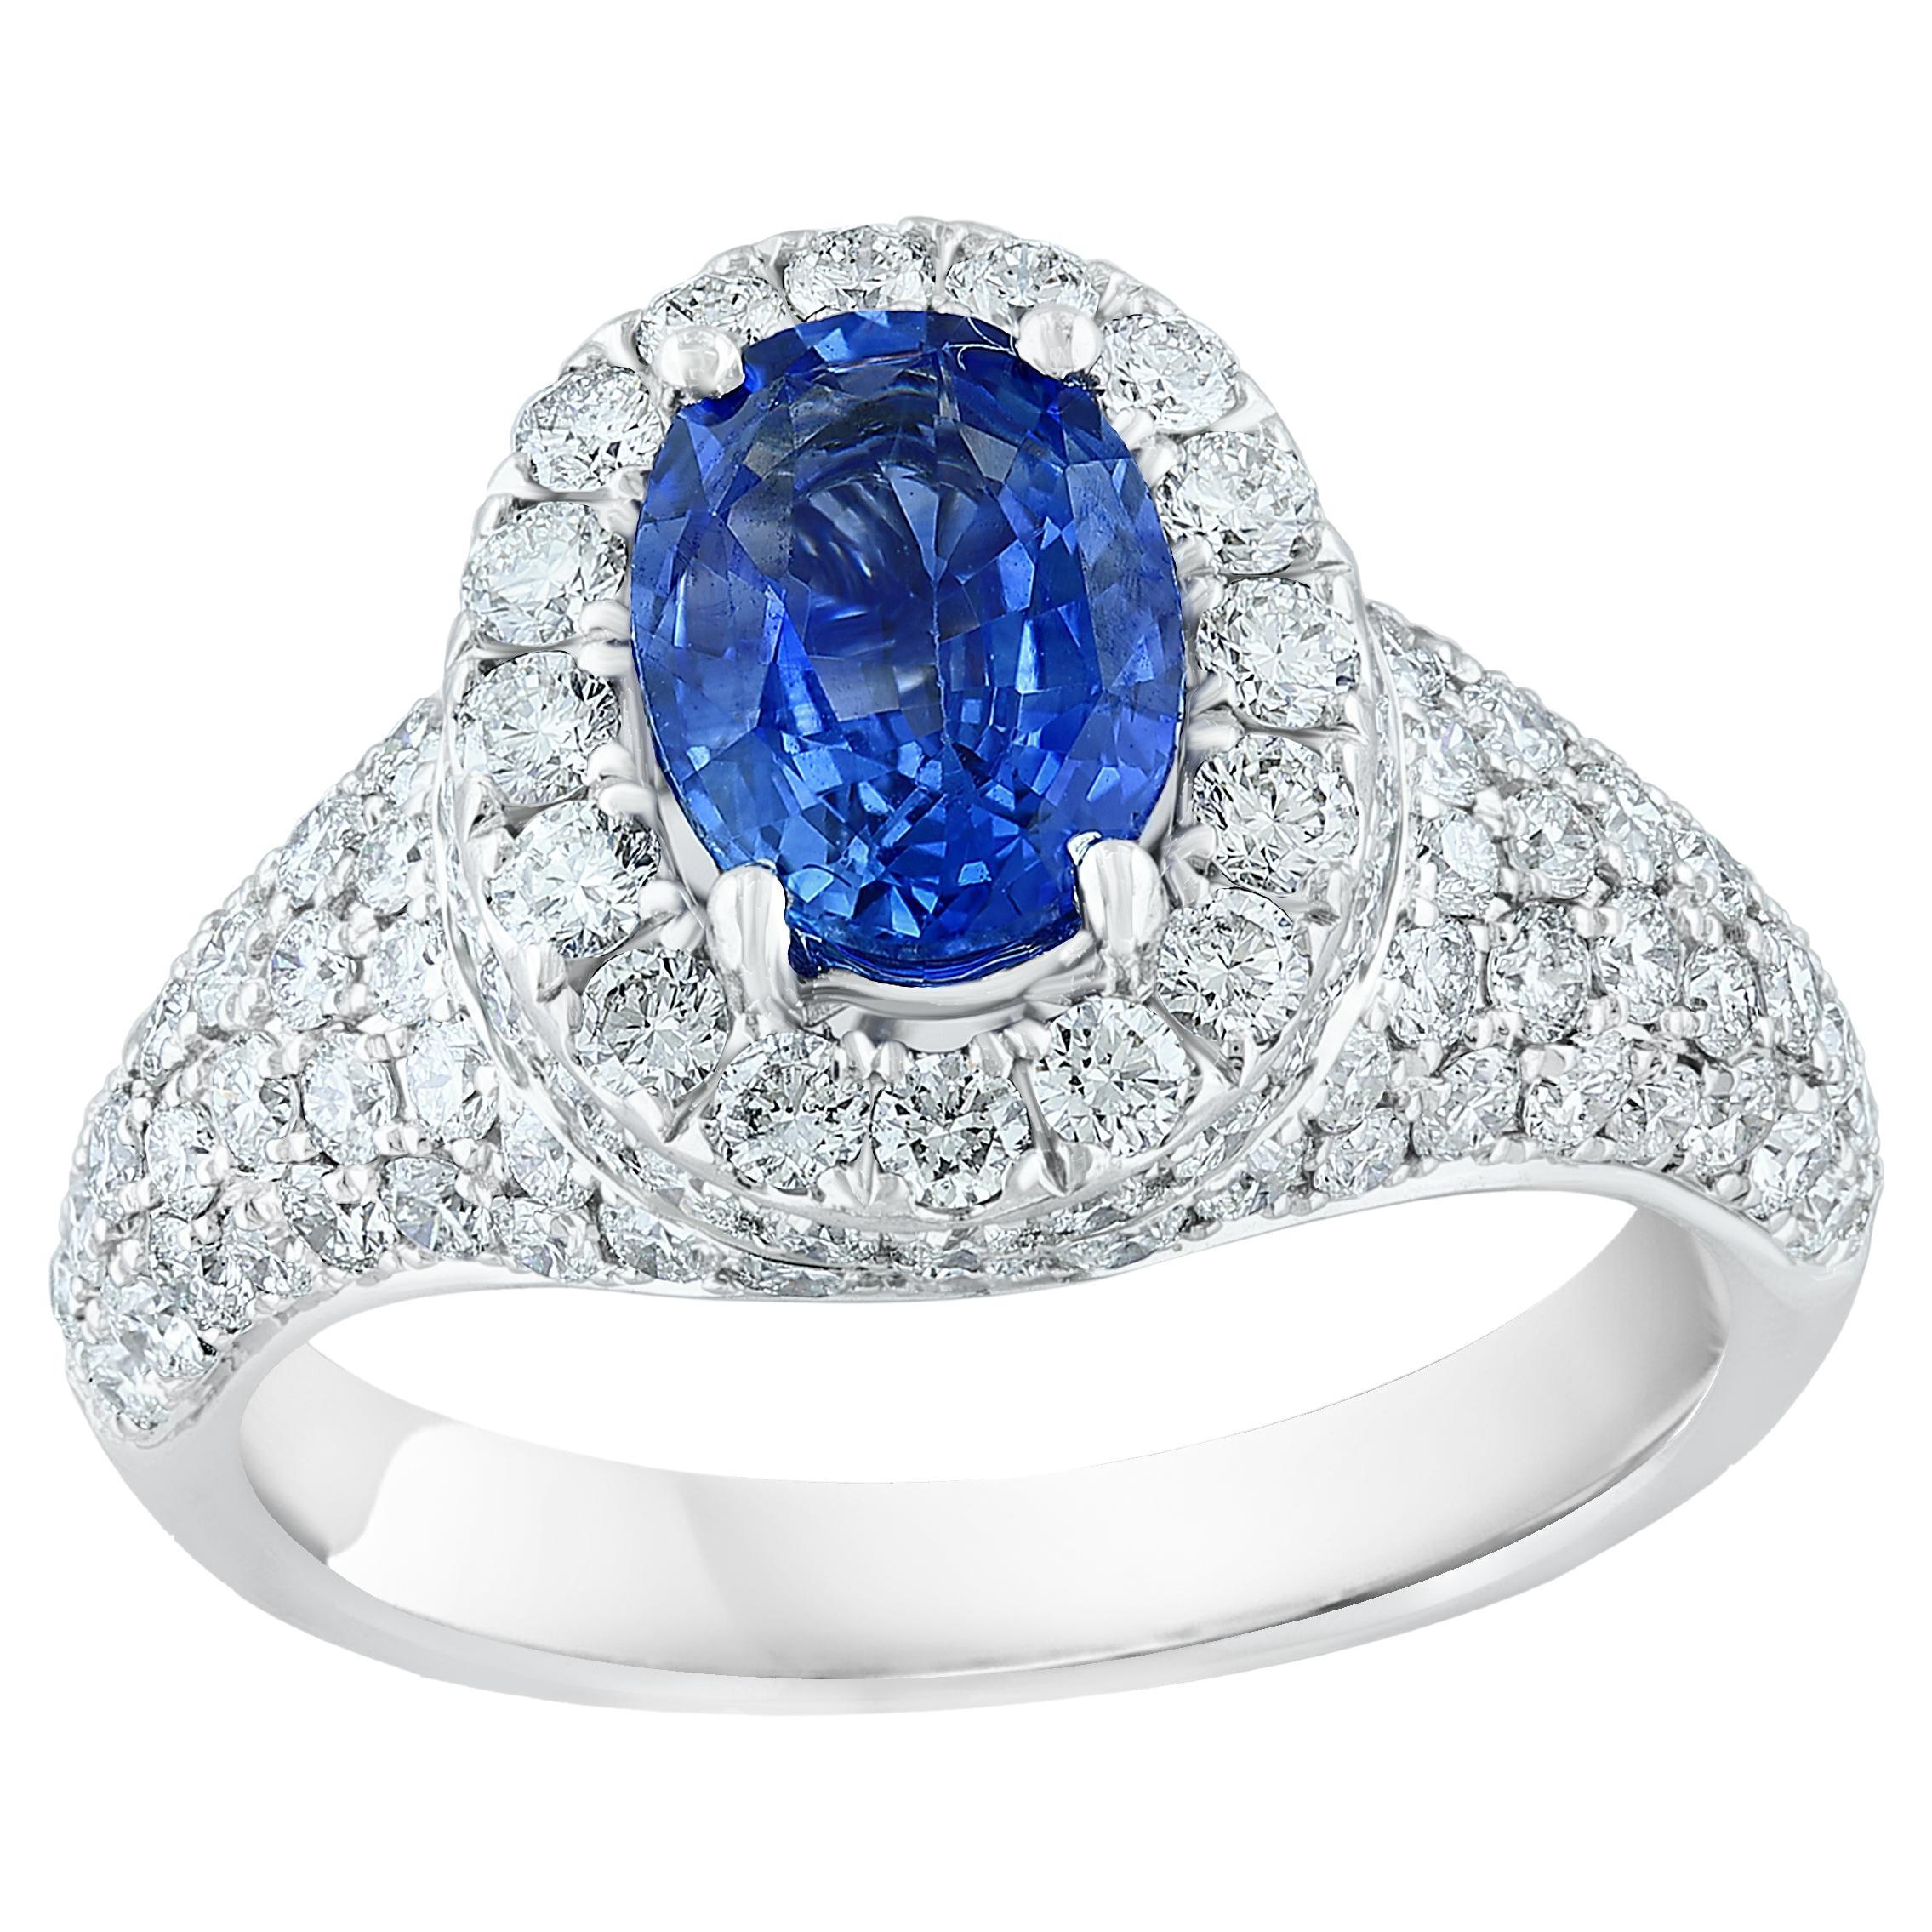 Bague à la mode en or blanc 18 carats avec saphir bleu taille ovale de 1,27 carat et diamants